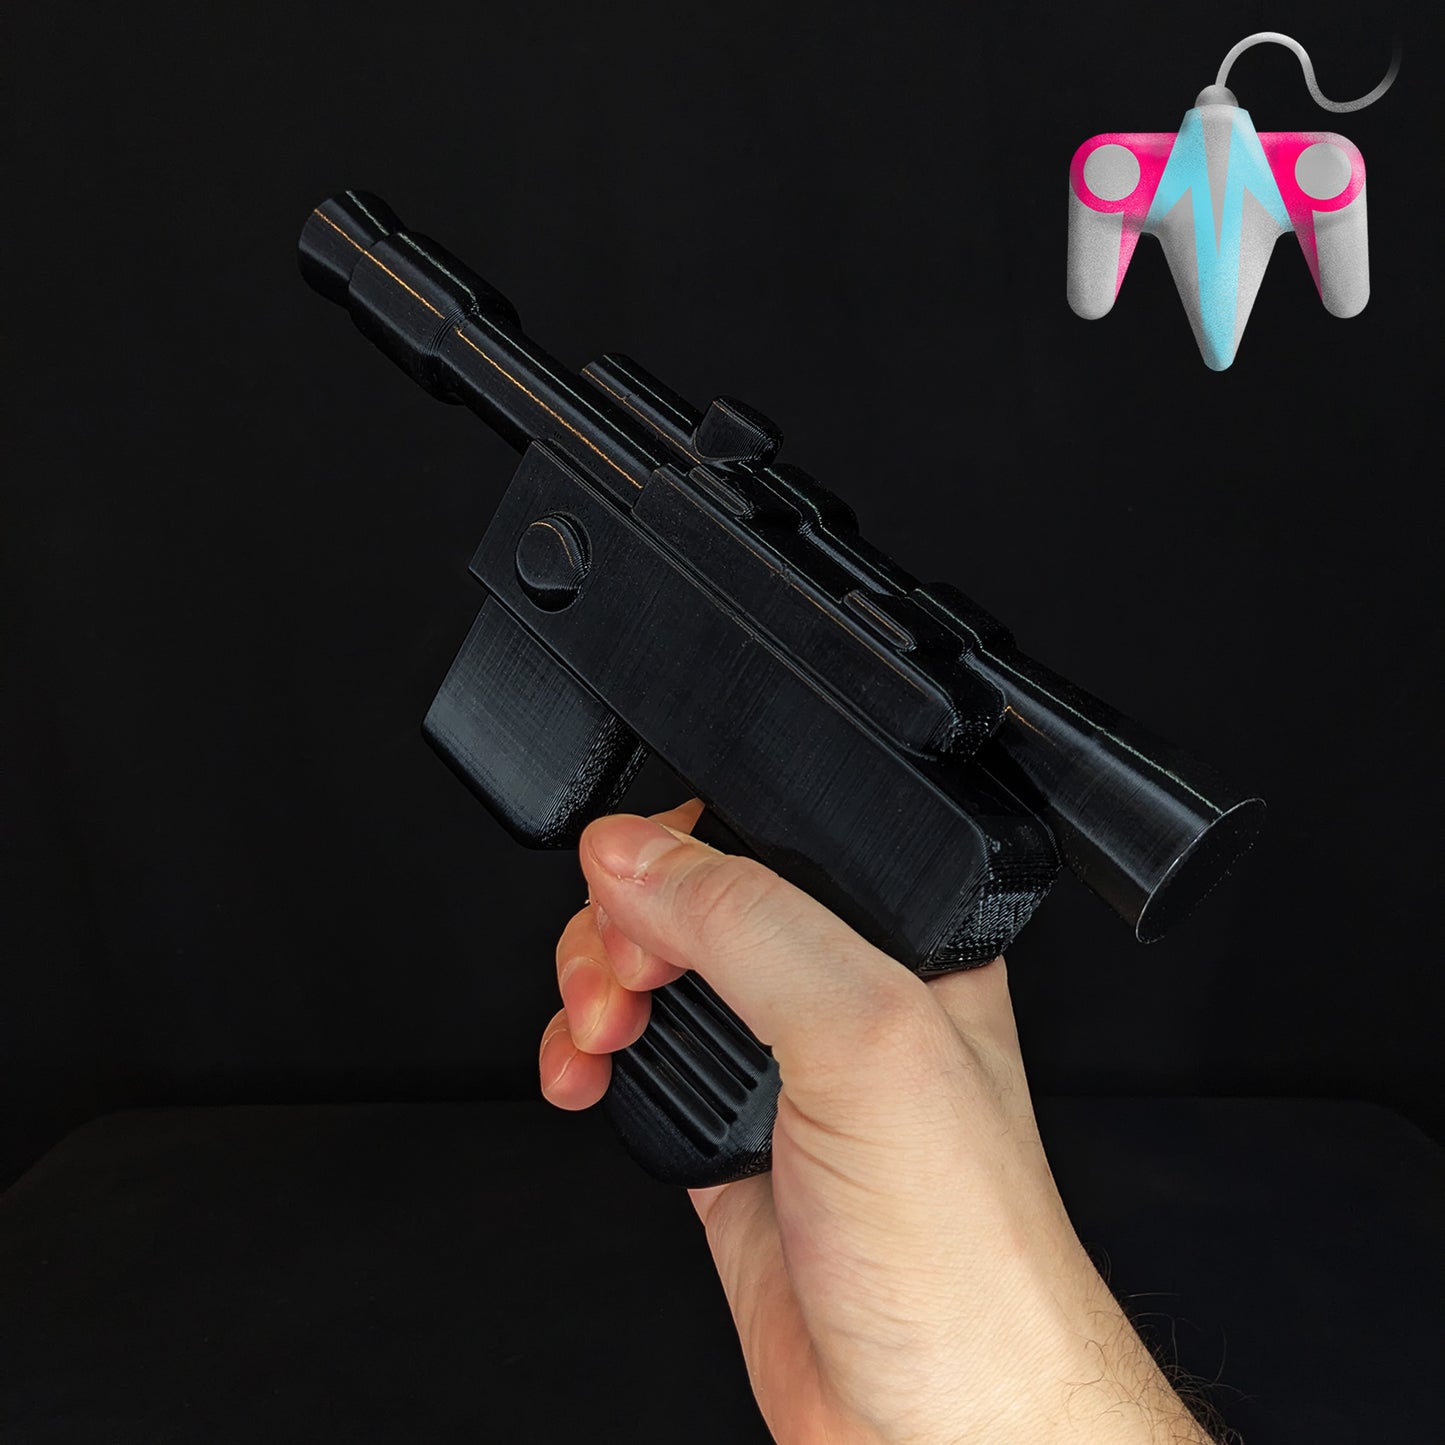 3D Printed Smuggler's Toy Blaster